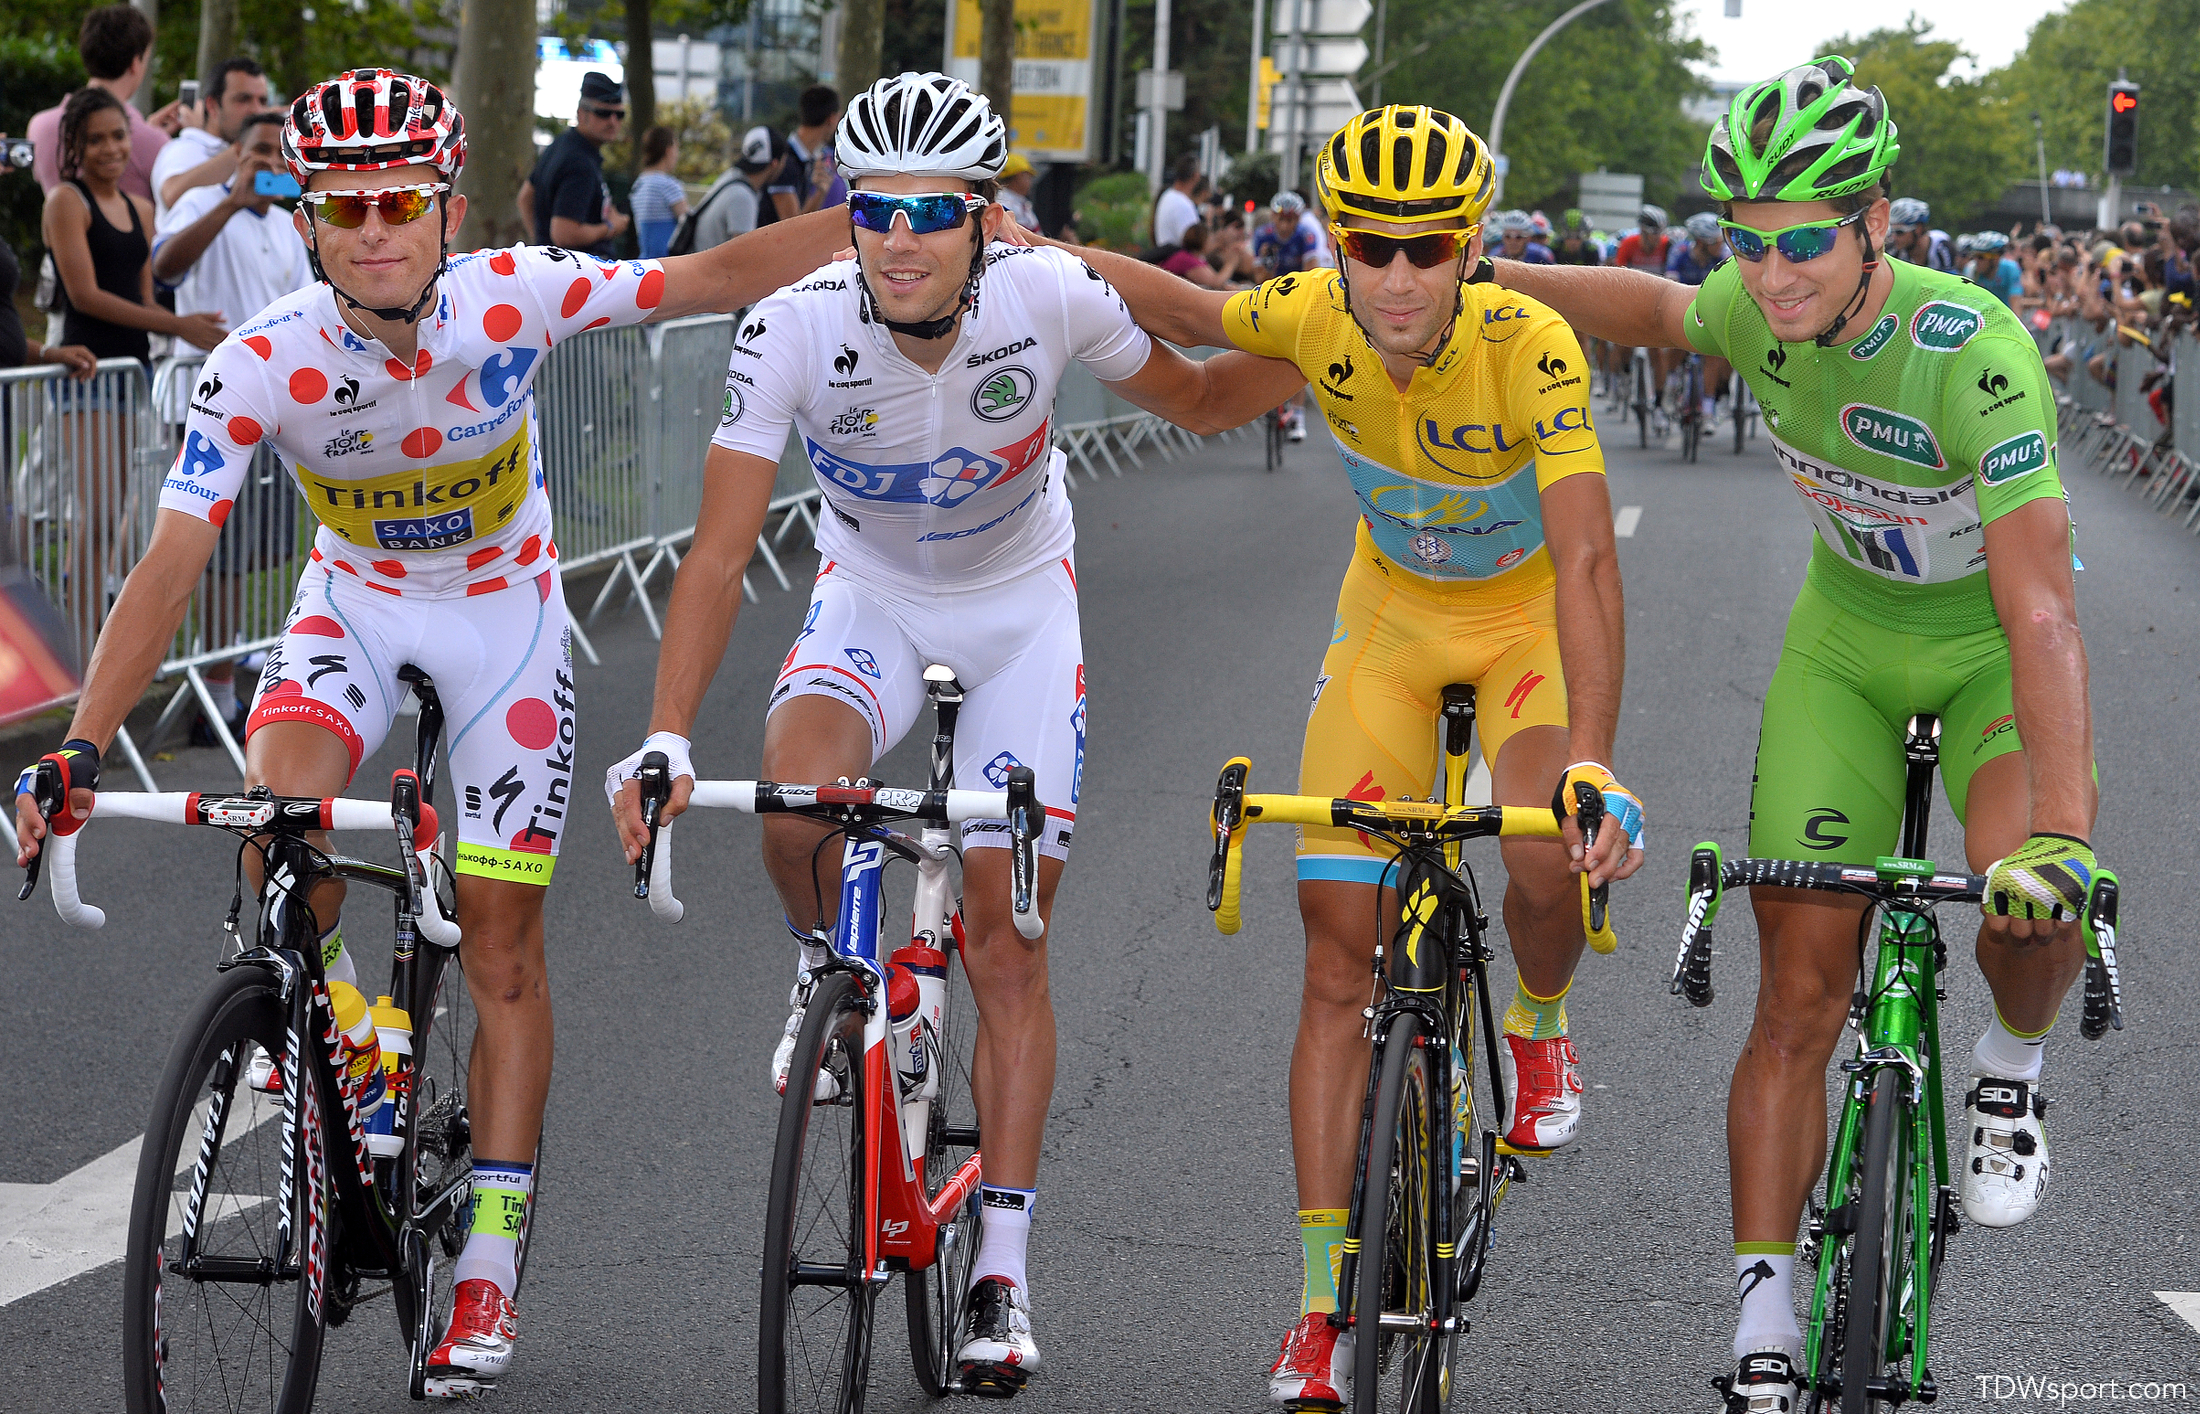 SRM's Tour de France Highlights